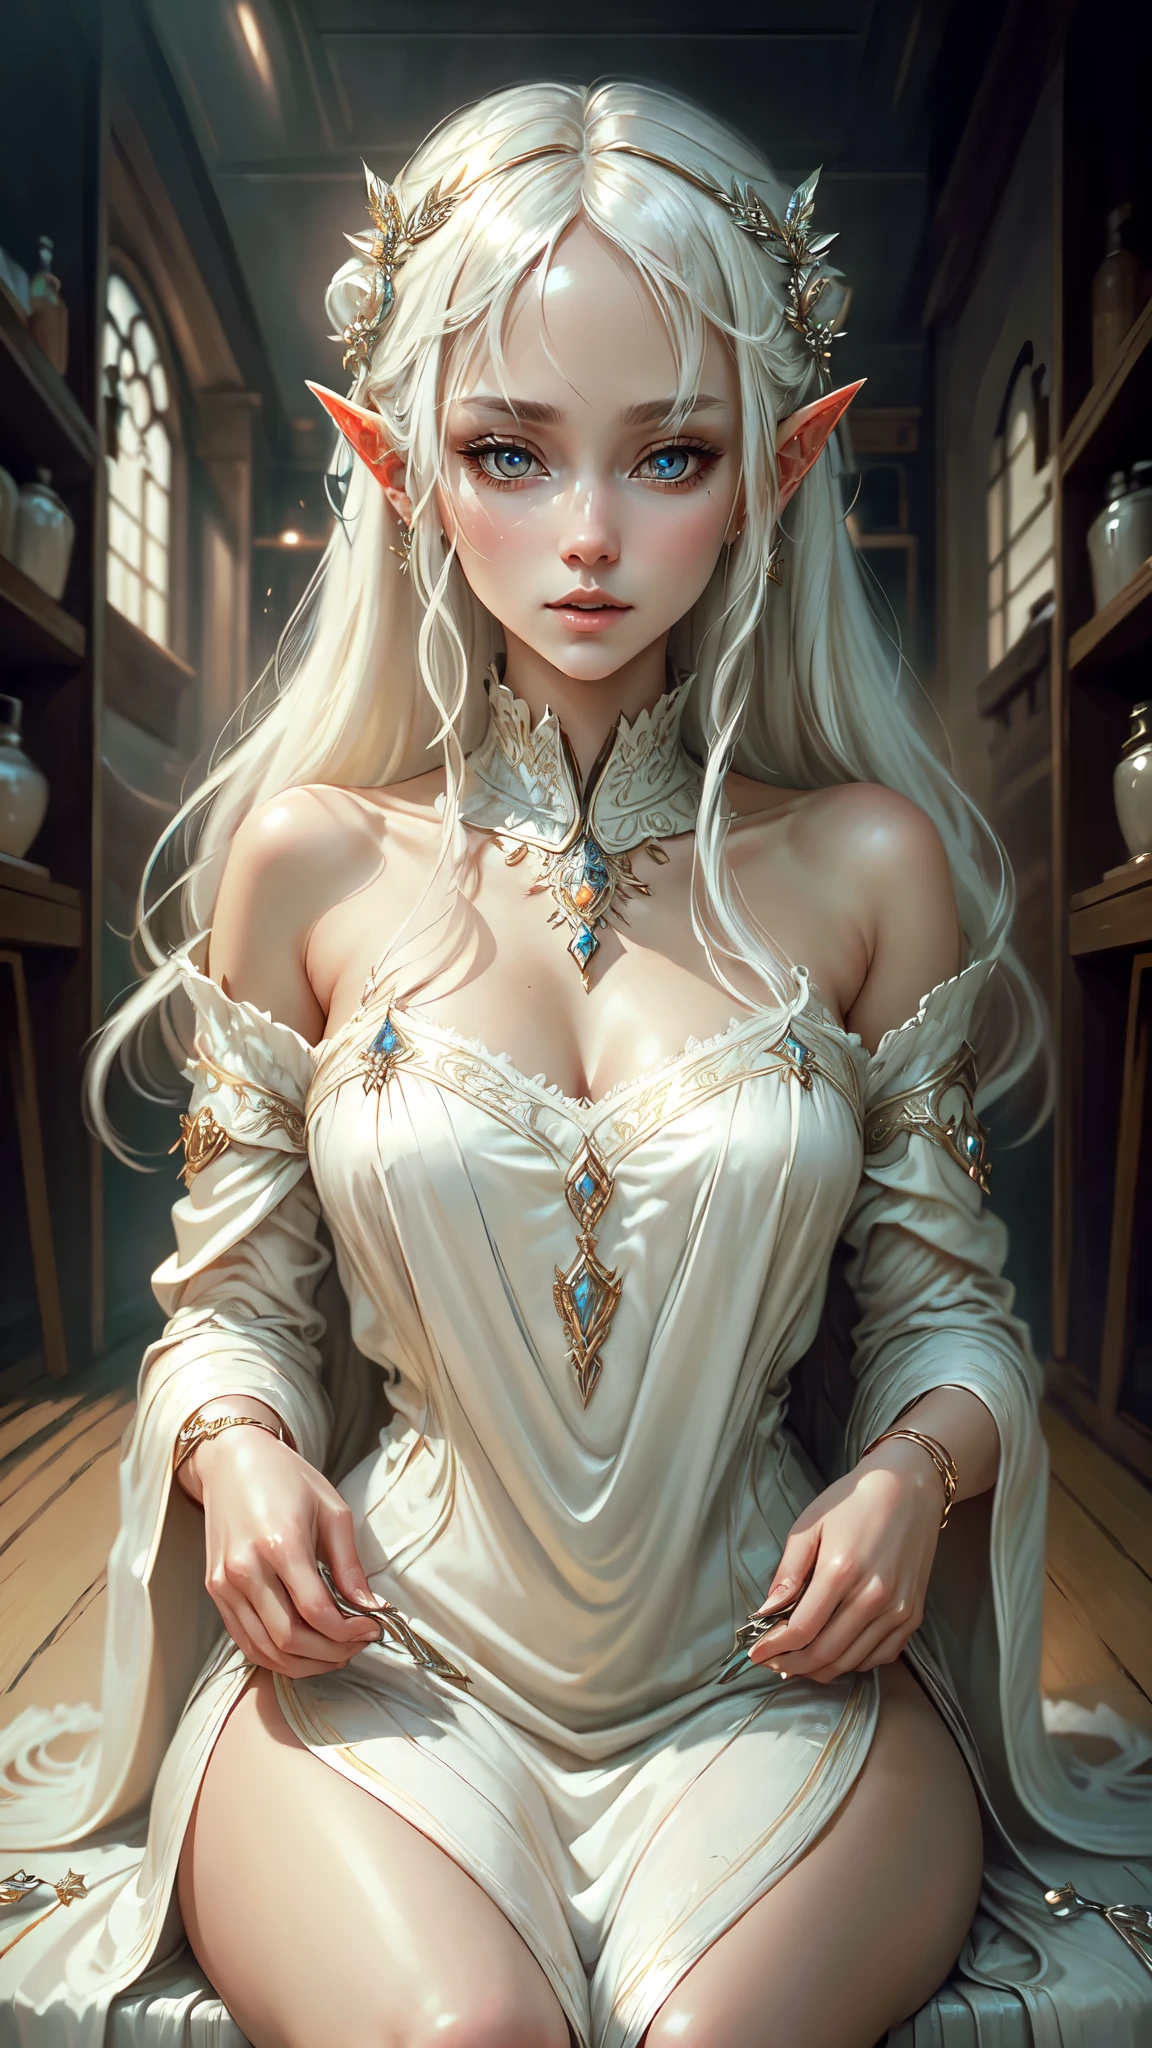 ((beste Qualität)), ((Meisterwerk)), (sehr detailliert:1.3),eine Frau weiße Haare Fransen Elfenkleid Weißgold-Accessoires, sitzend schüchtern Blick errötet, detailliertes Gesicht detaillierte Augen, detaillierte Hände